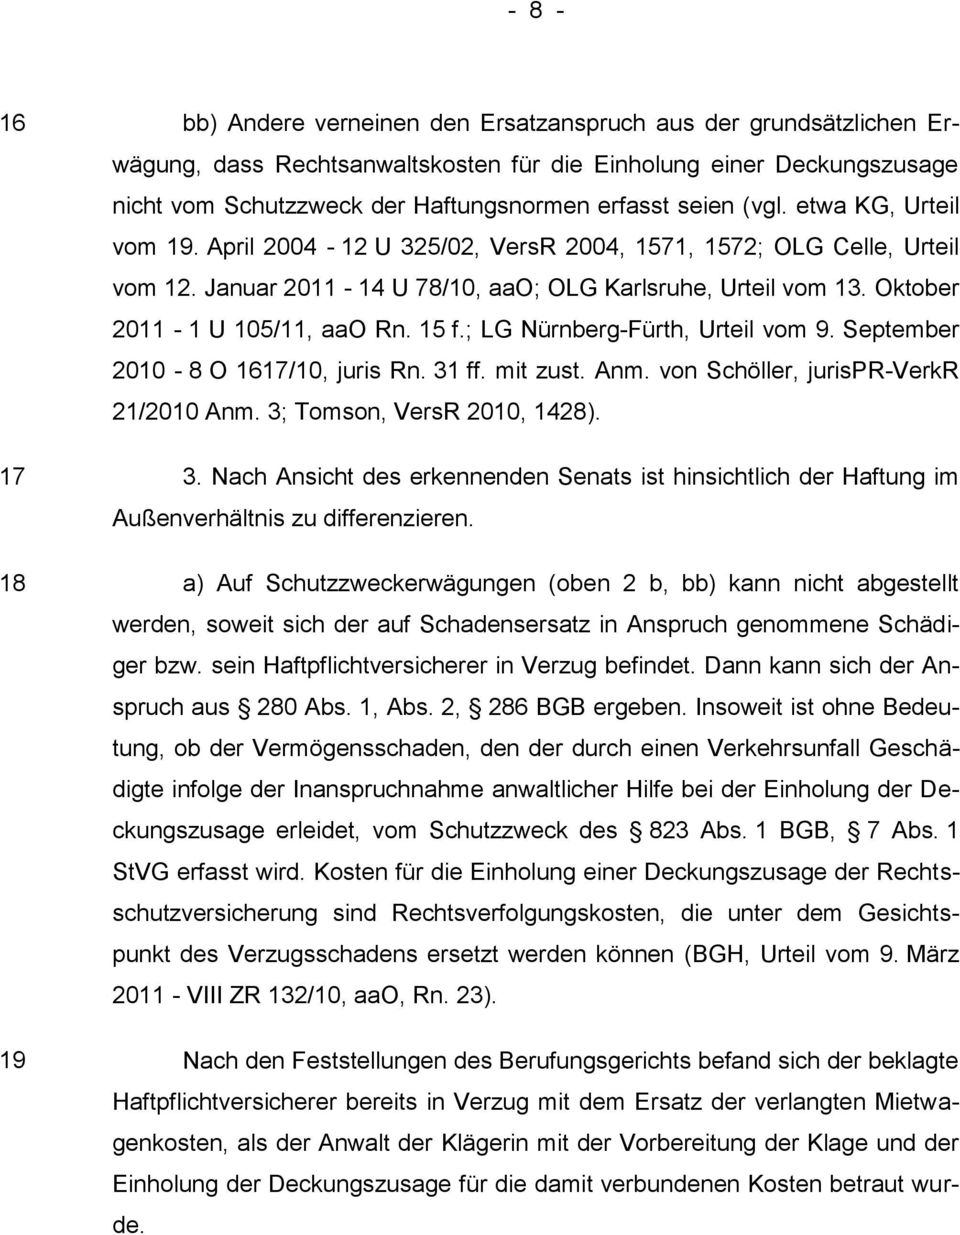 Oktober 2011-1 U 105/11, aao Rn. 15 f.; LG Nürnberg-Fürth, Urteil vom 9. September 2010-8 O 1617/10, juris Rn. 31 ff. mit zust. Anm. von Schöller, jurispr-verkr 21/2010 Anm.